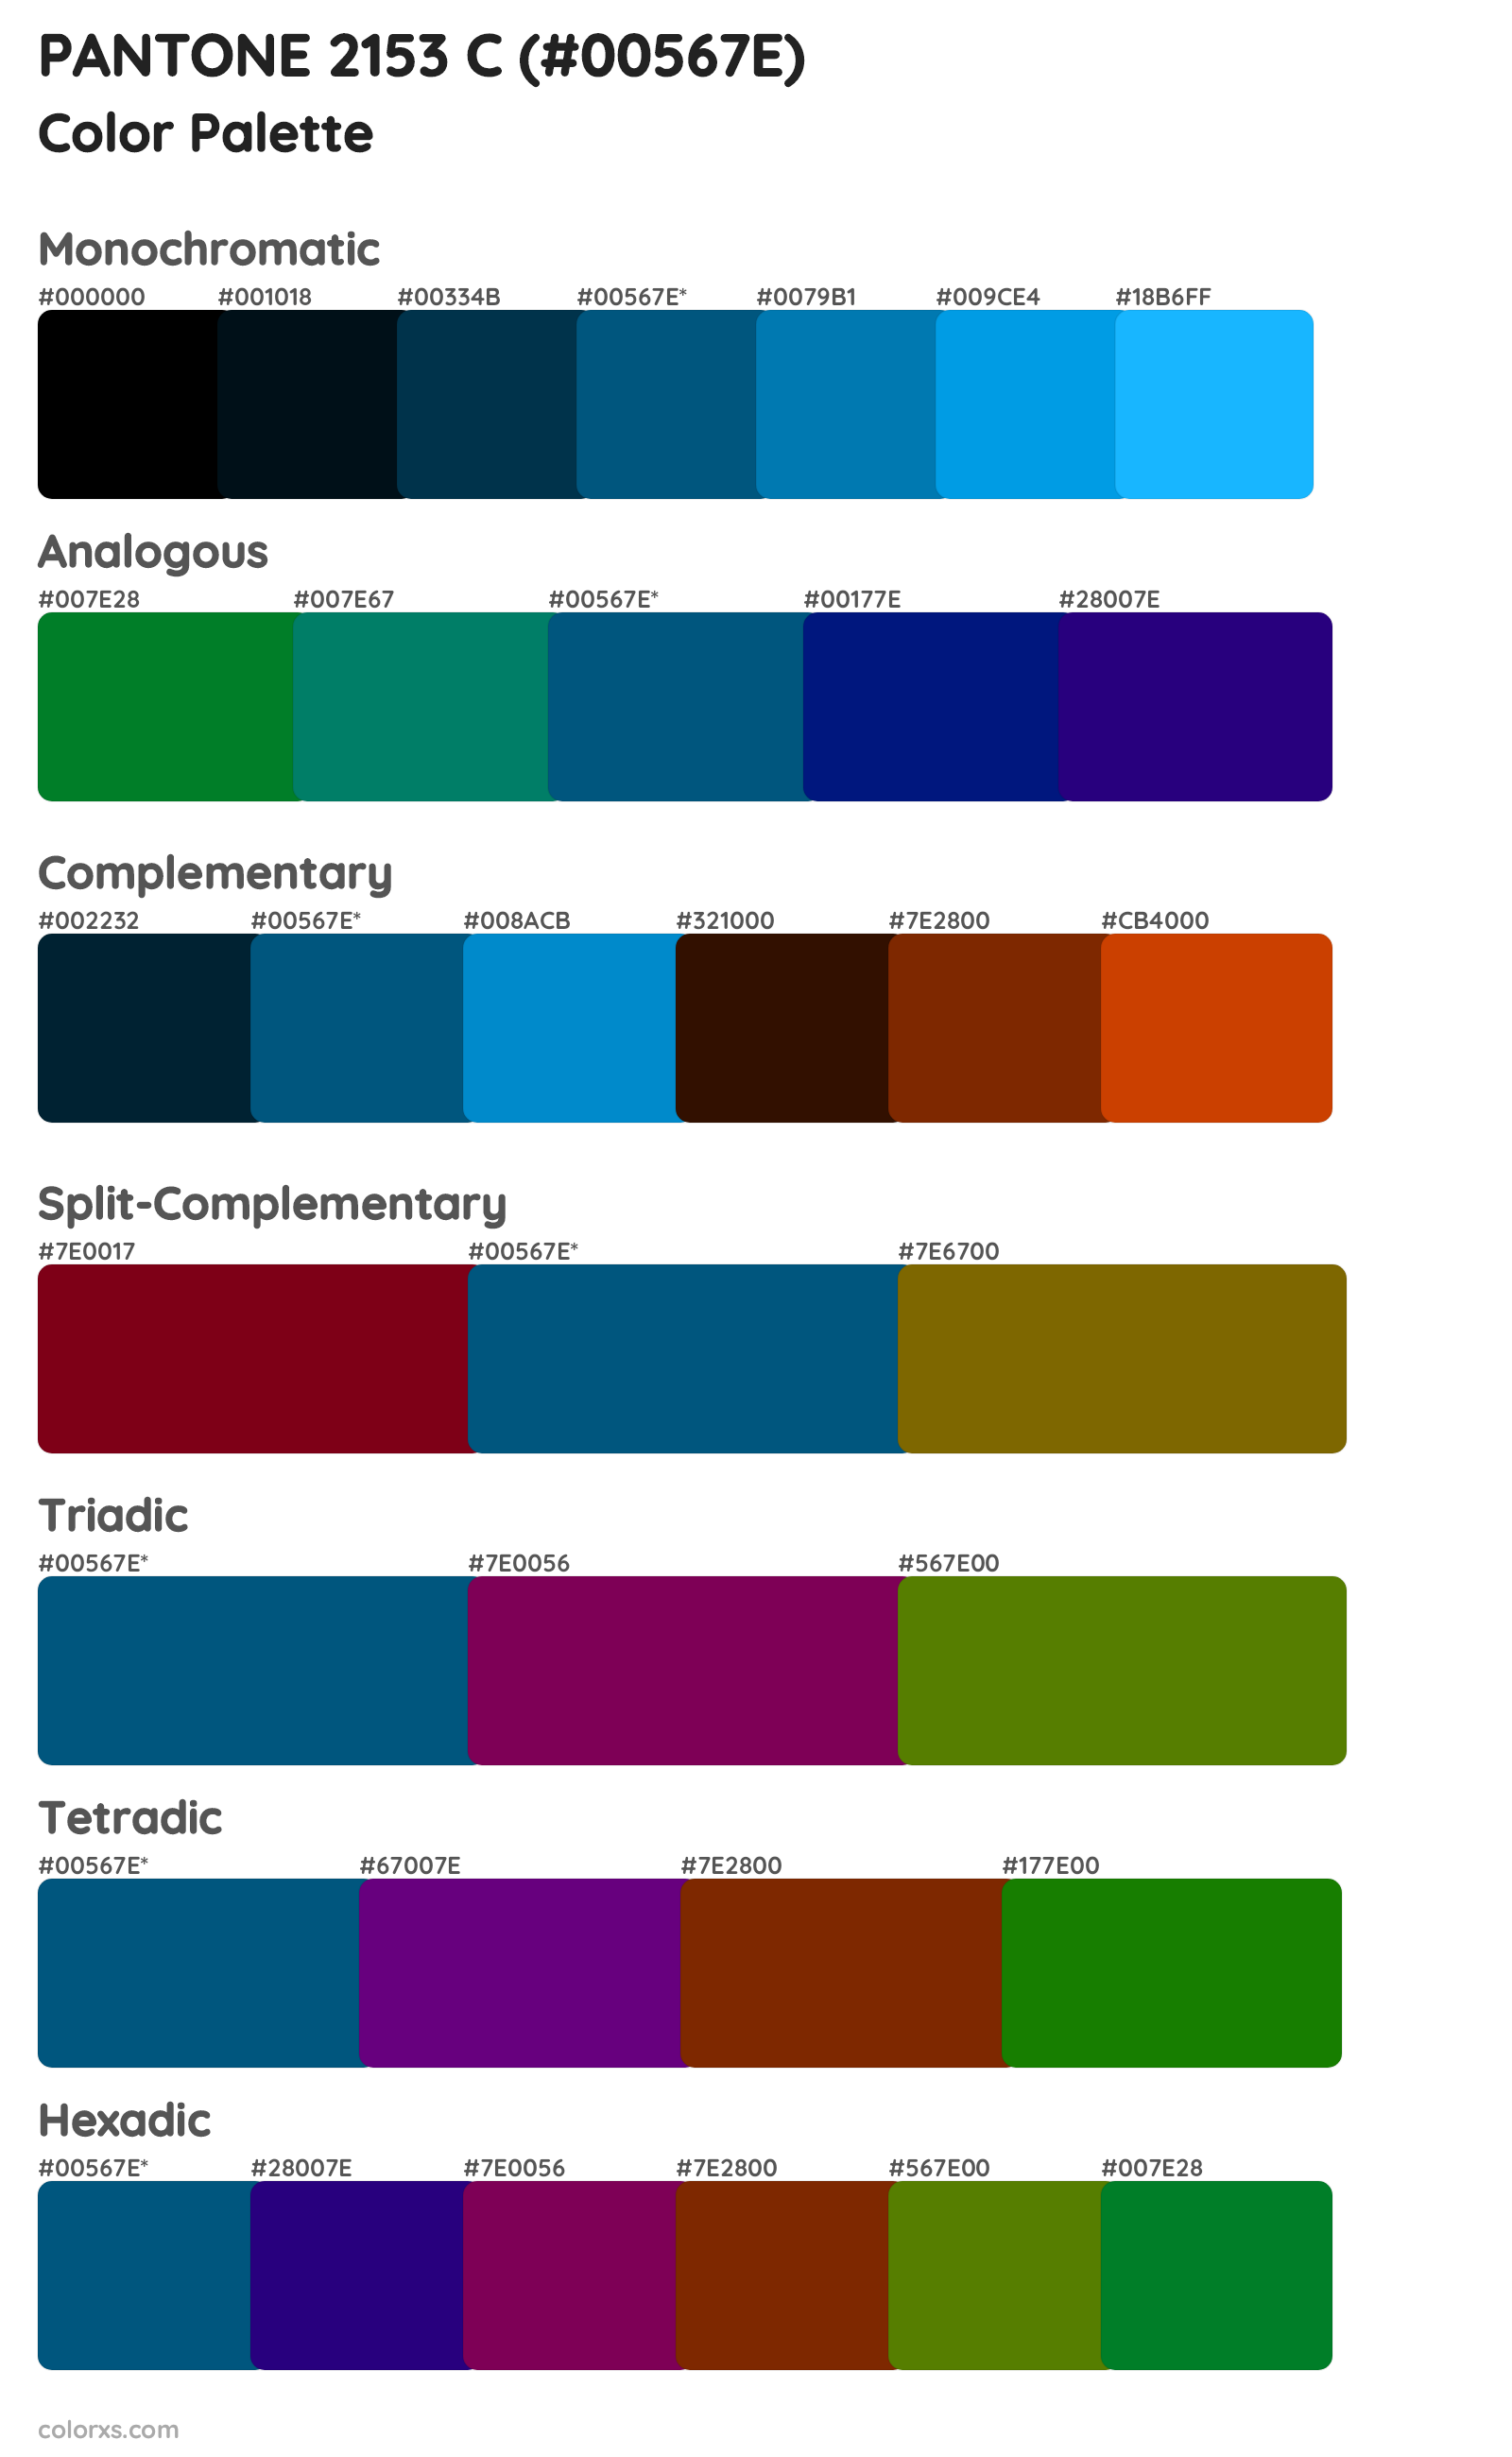 PANTONE 2153 C Color Scheme Palettes